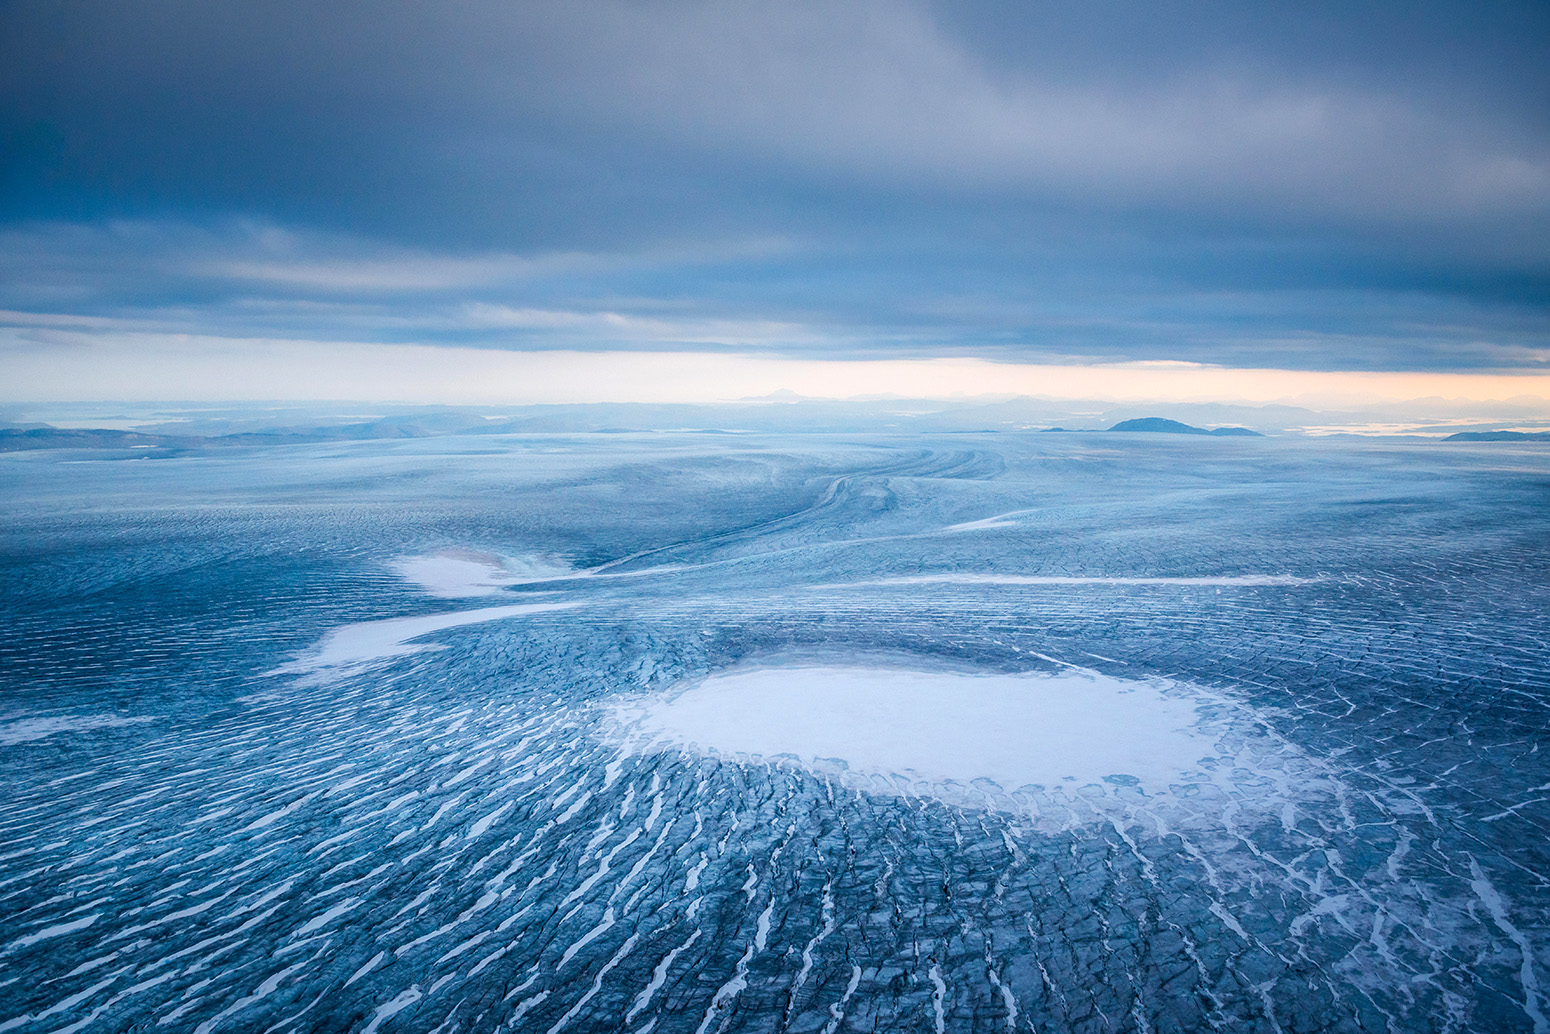 格陵兰冰盖的鸟瞰图。信贷:imageBROKER除股票的照片。KXAJ2W